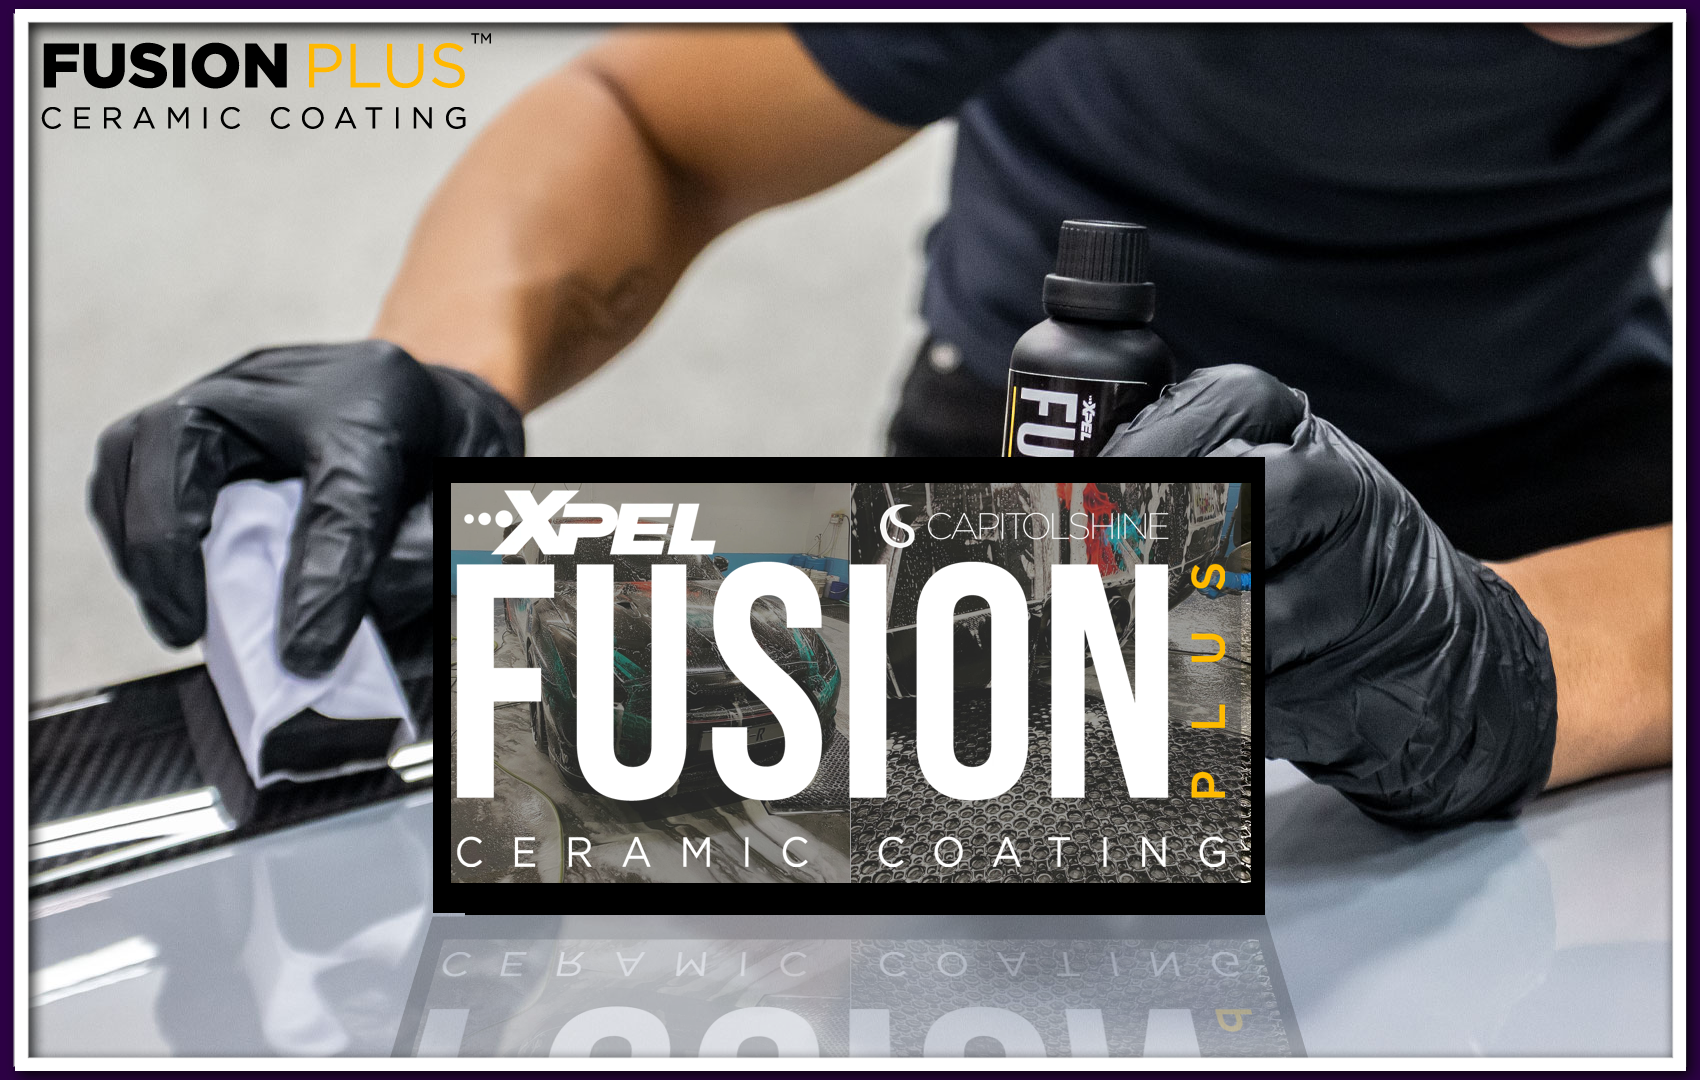 XPEL Introduces FUSION PLUS Ceramic Coating